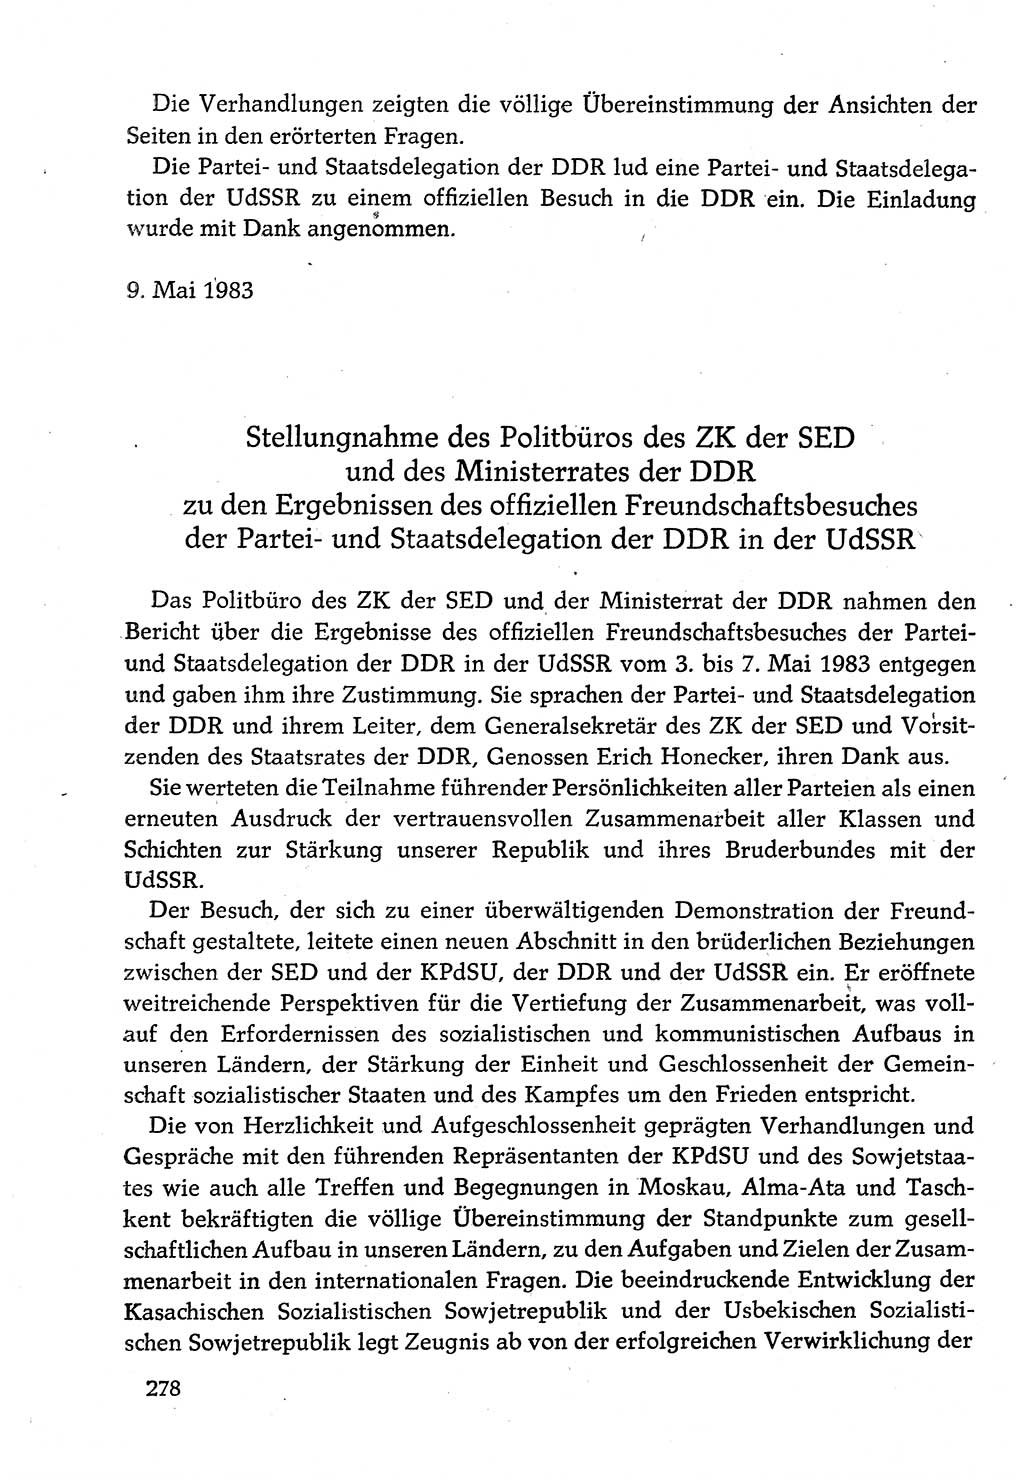 Dokumente der Sozialistischen Einheitspartei Deutschlands (SED) [Deutsche Demokratische Republik (DDR)] 1982-1983, Seite 278 (Dok. SED DDR 1982-1983, S. 278)